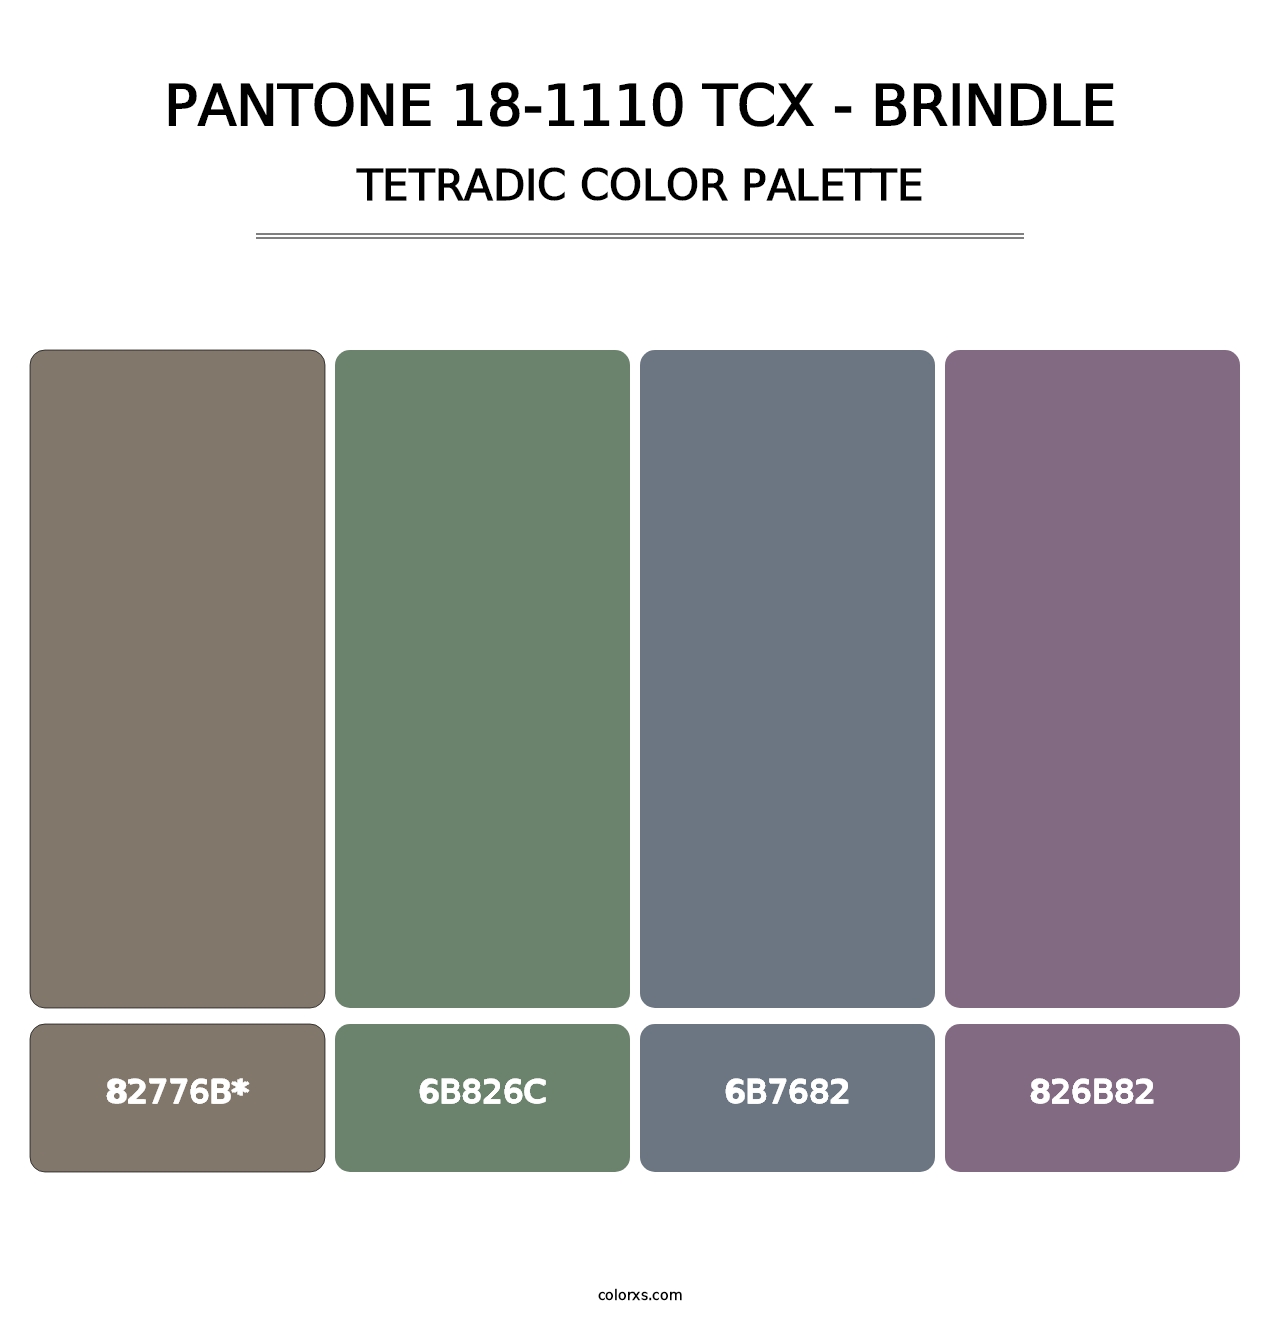 PANTONE 18-1110 TCX - Brindle - Tetradic Color Palette